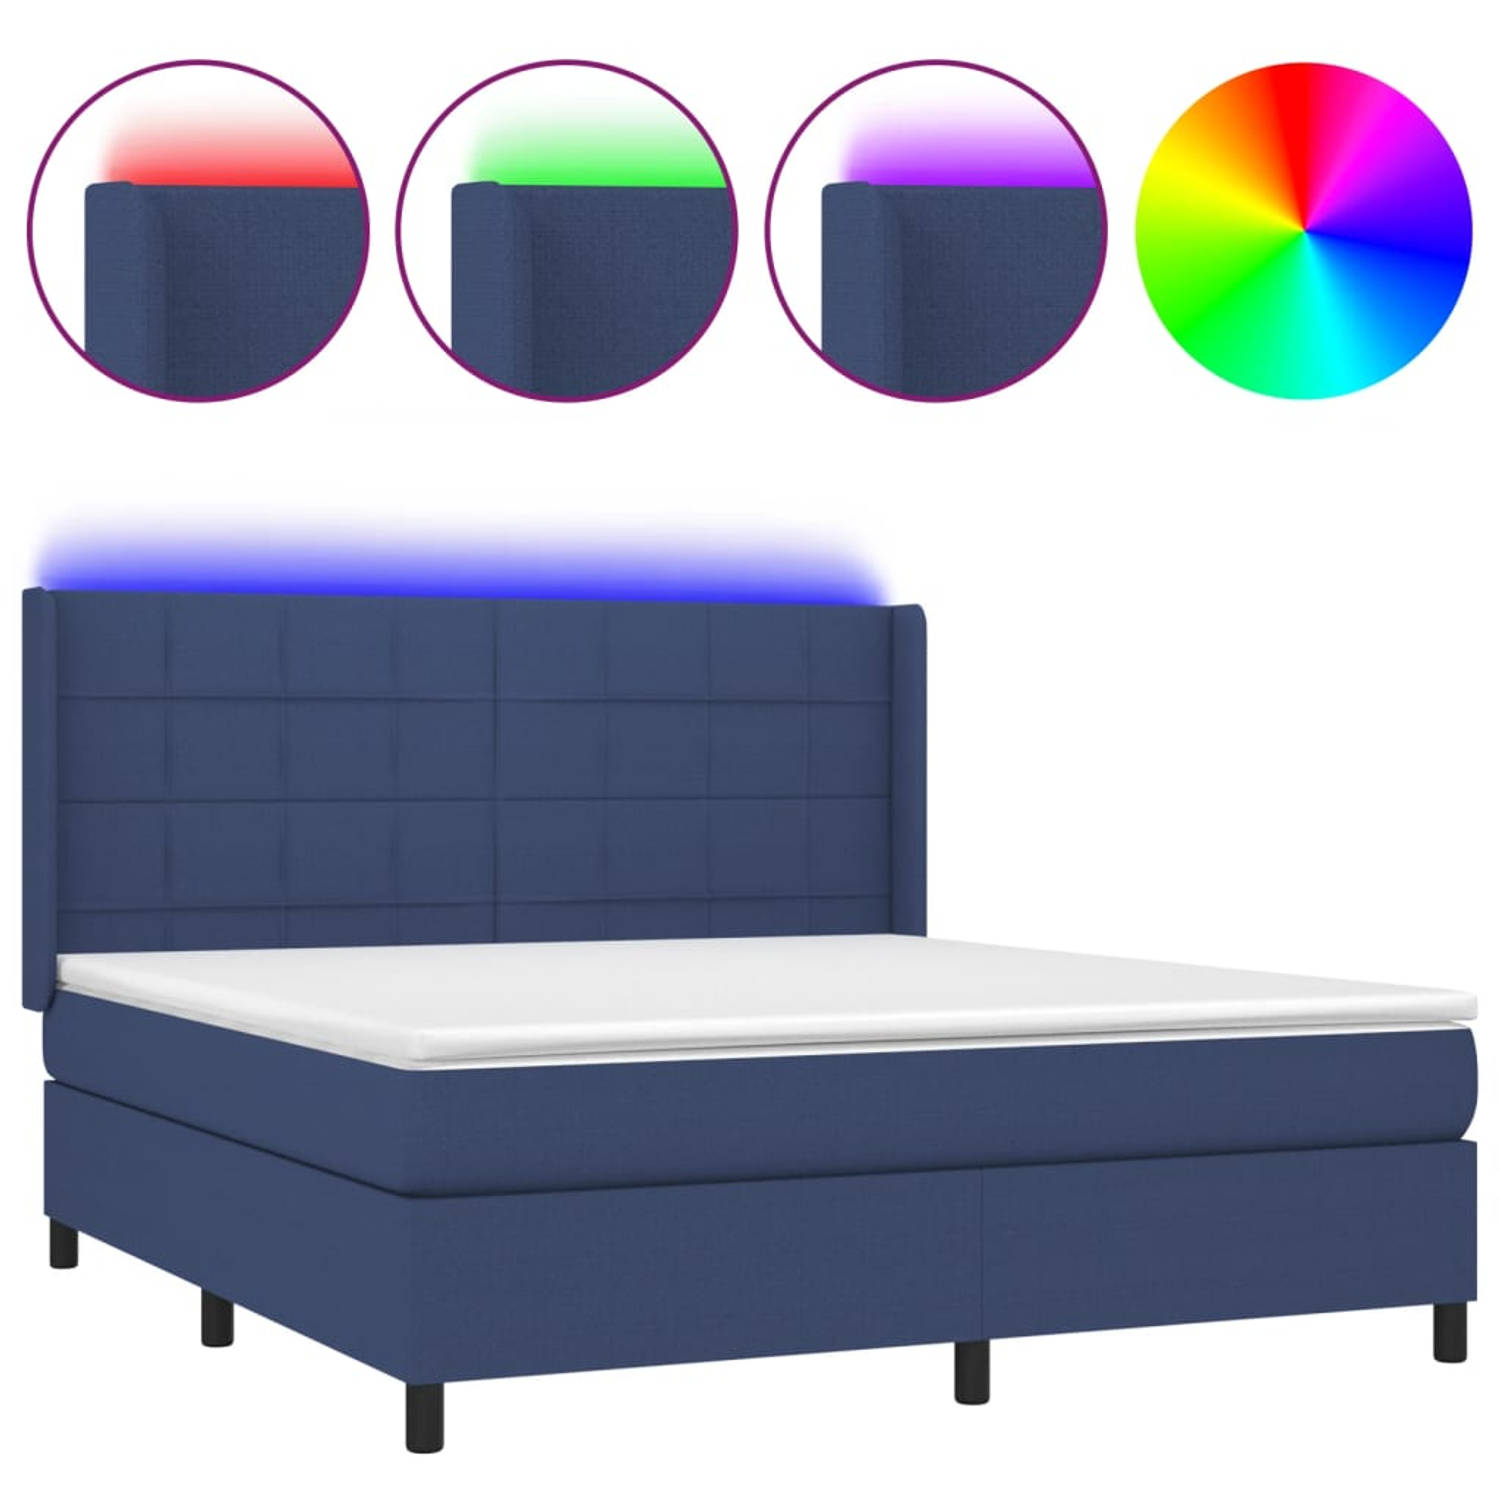 The Living Store Boxspring Bed - Blauwe stof - 203 x 163 x 118/128 cm - Verstelbaar hoofdbord - Kleurrijke LED-verlichting - Pocketvering matras - Huidvriendelijk topmatras - Inclu